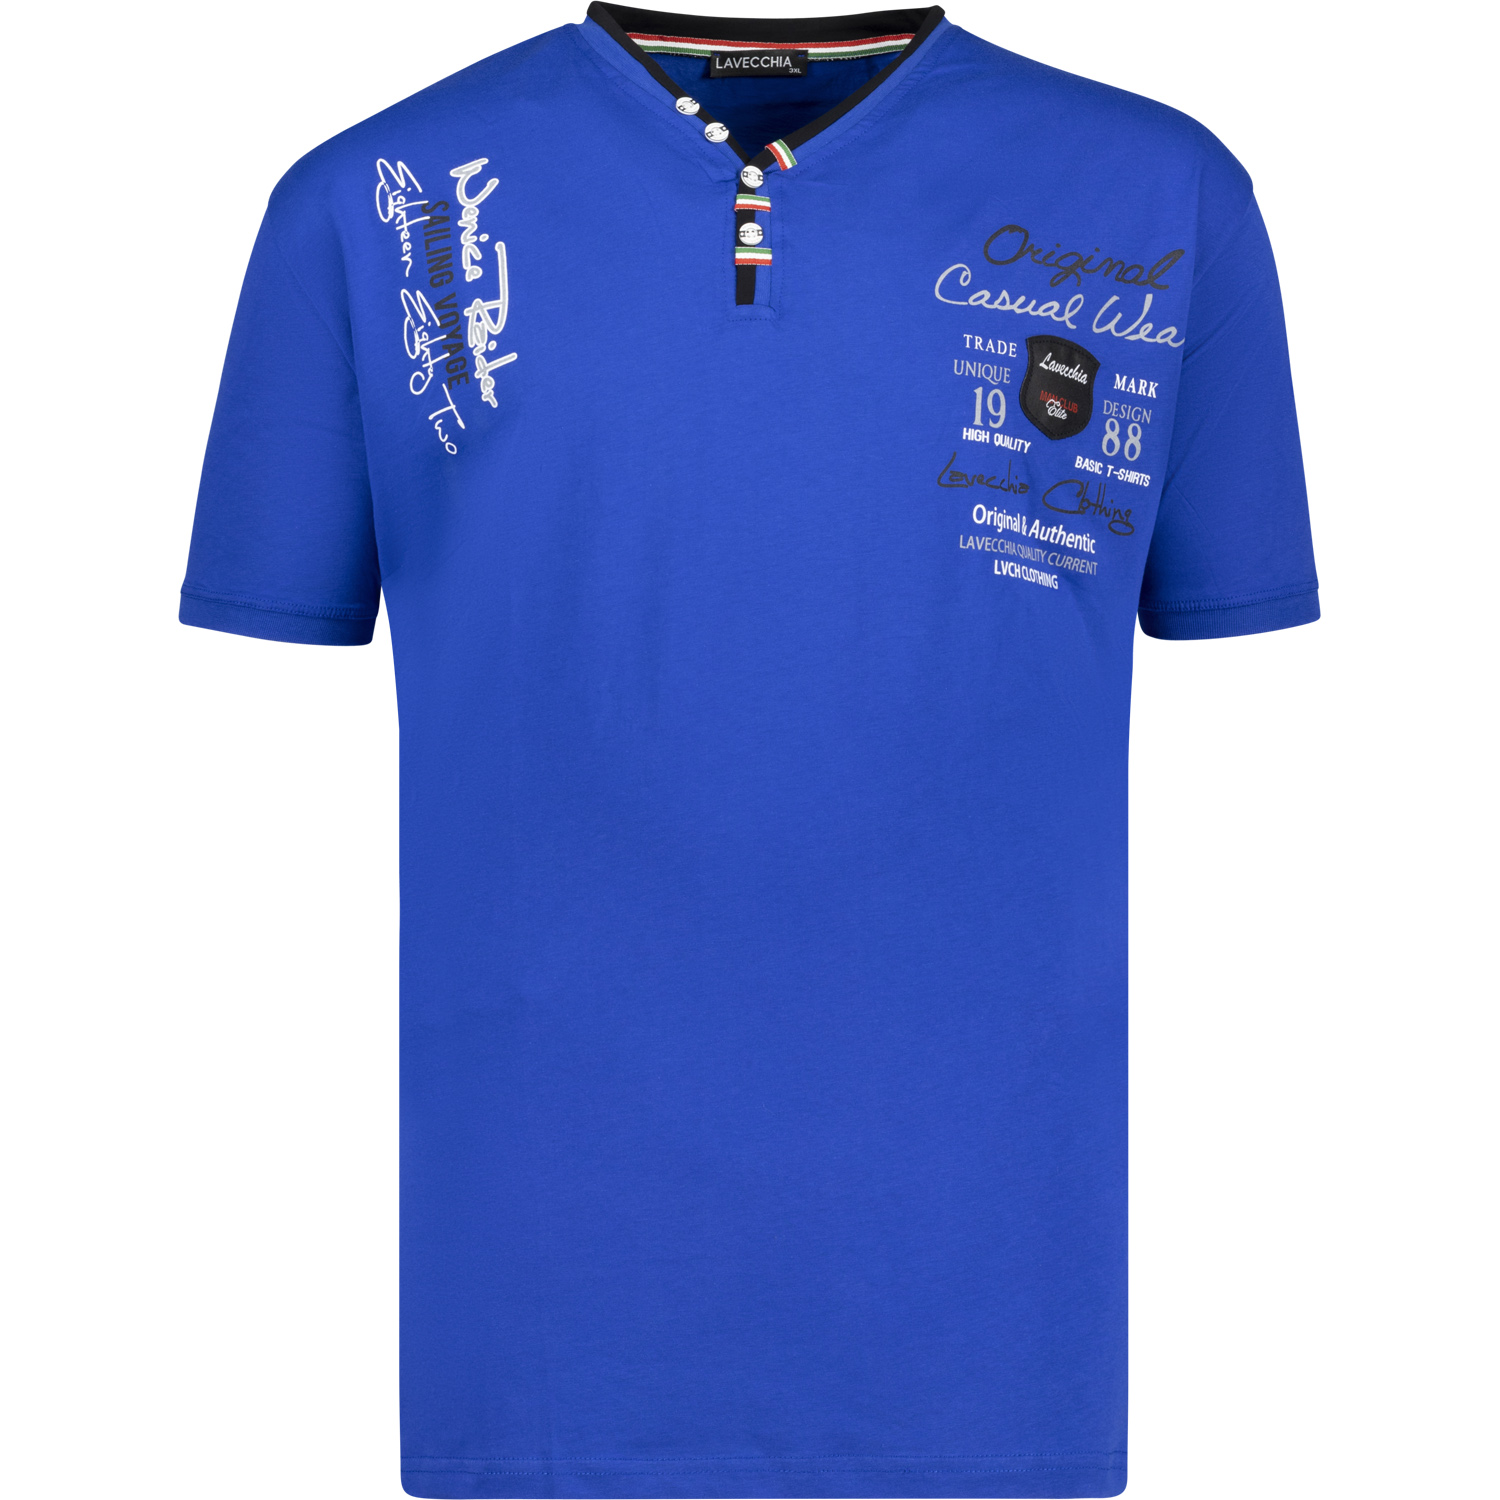 T-shirt imprimé couleur bleu royal de Lavecchia grandes tailles jusqu'au 8XL